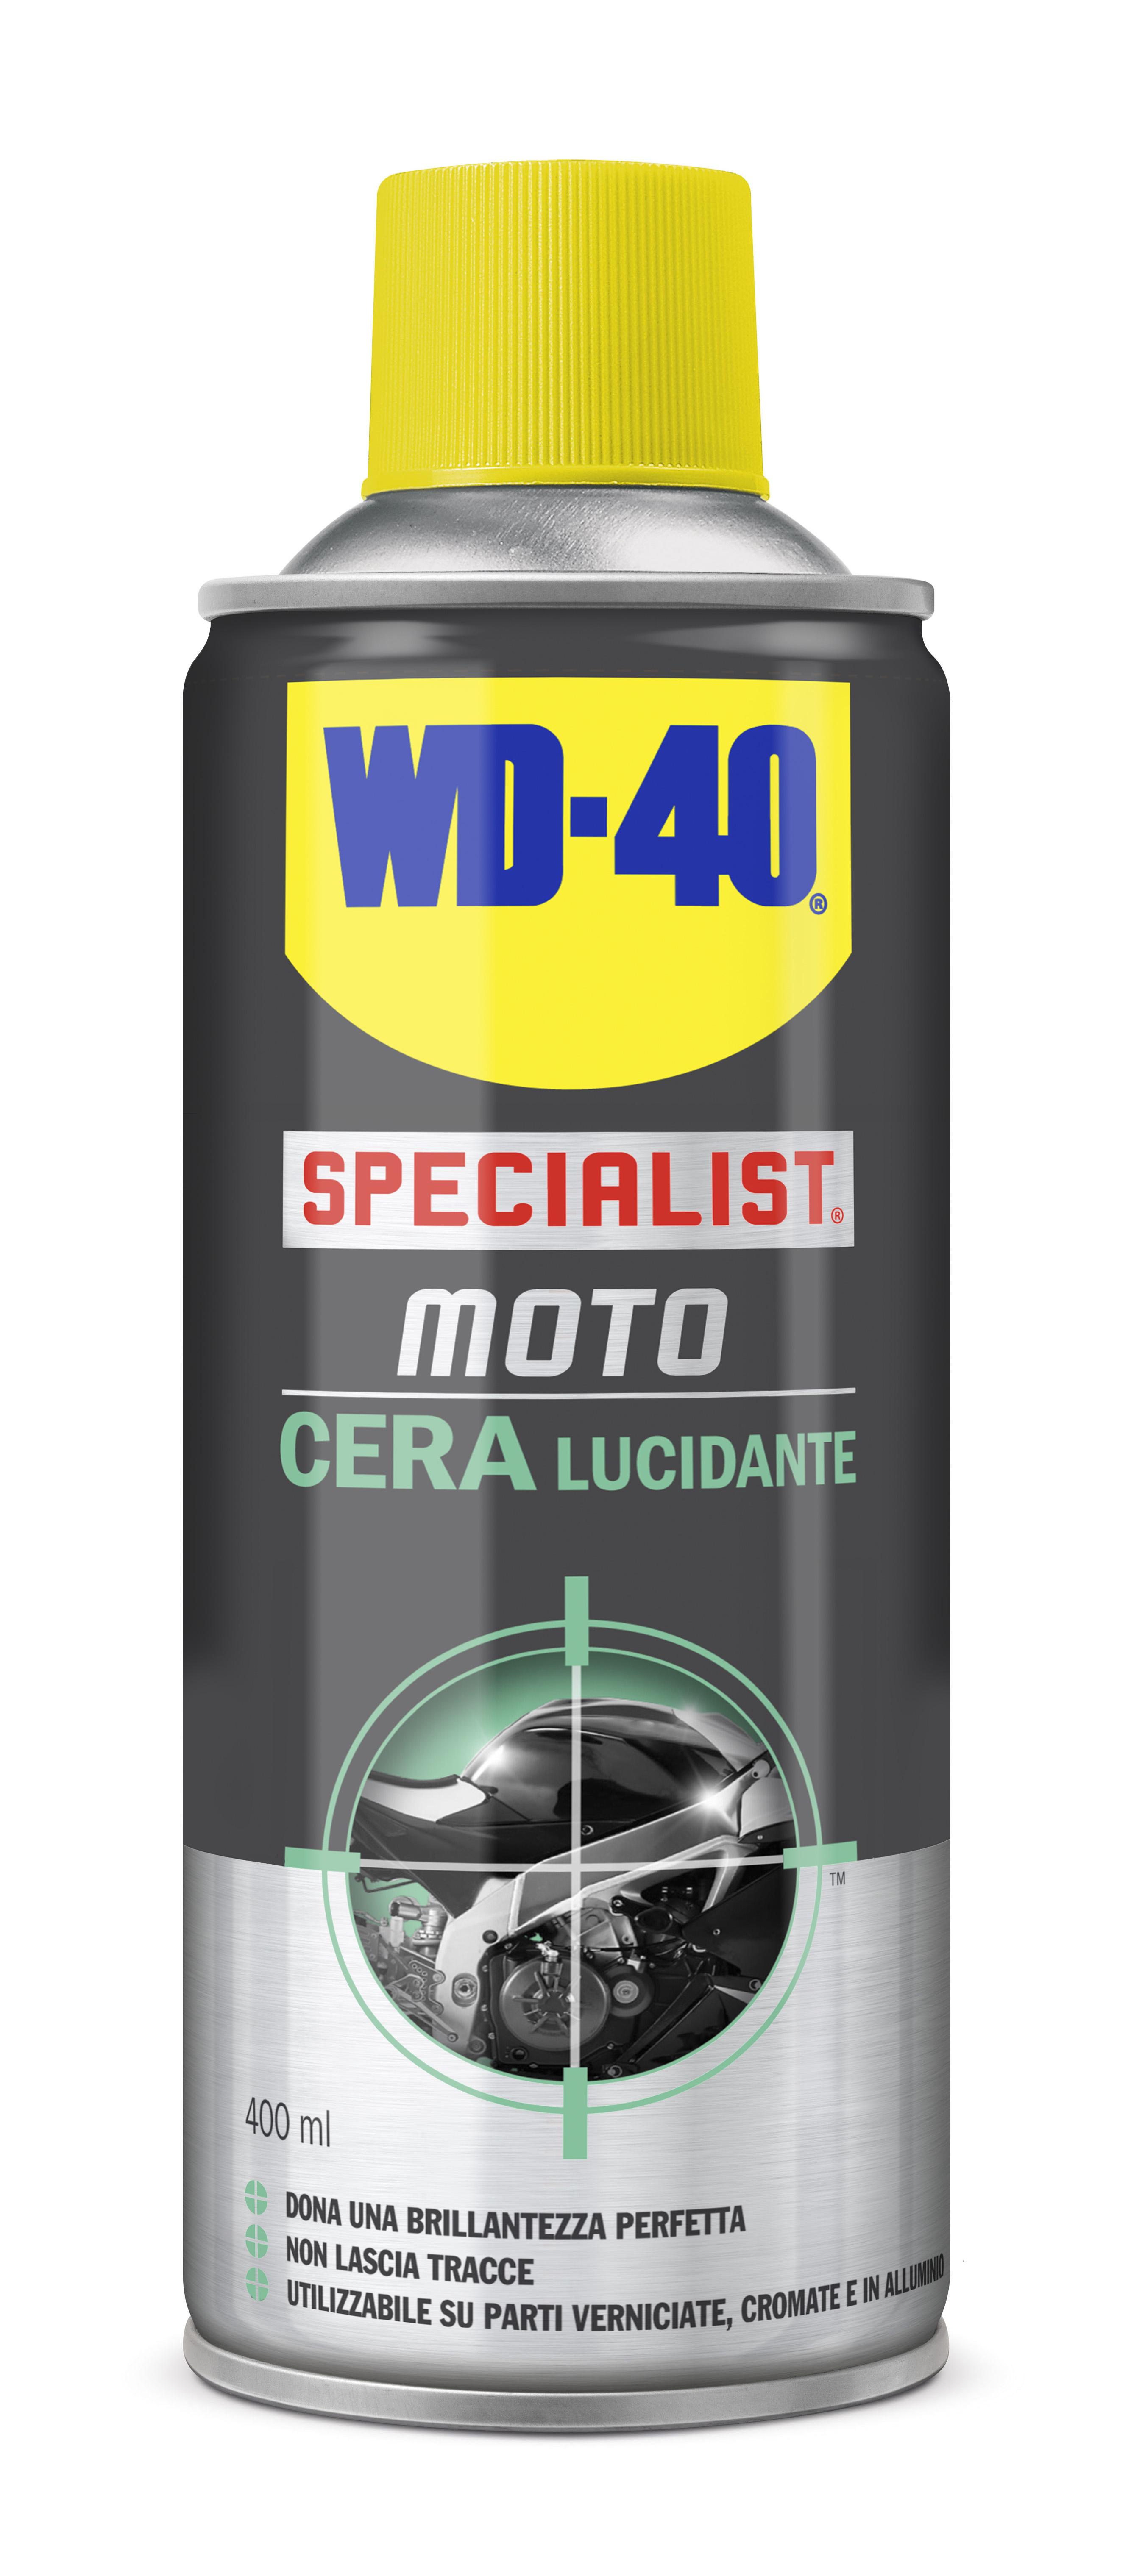 Wd40 Specialist moto Cera lucidante 400ml Usi raccomandati: parti  verniciate, alluminio, cromature. - Rif. A-91805